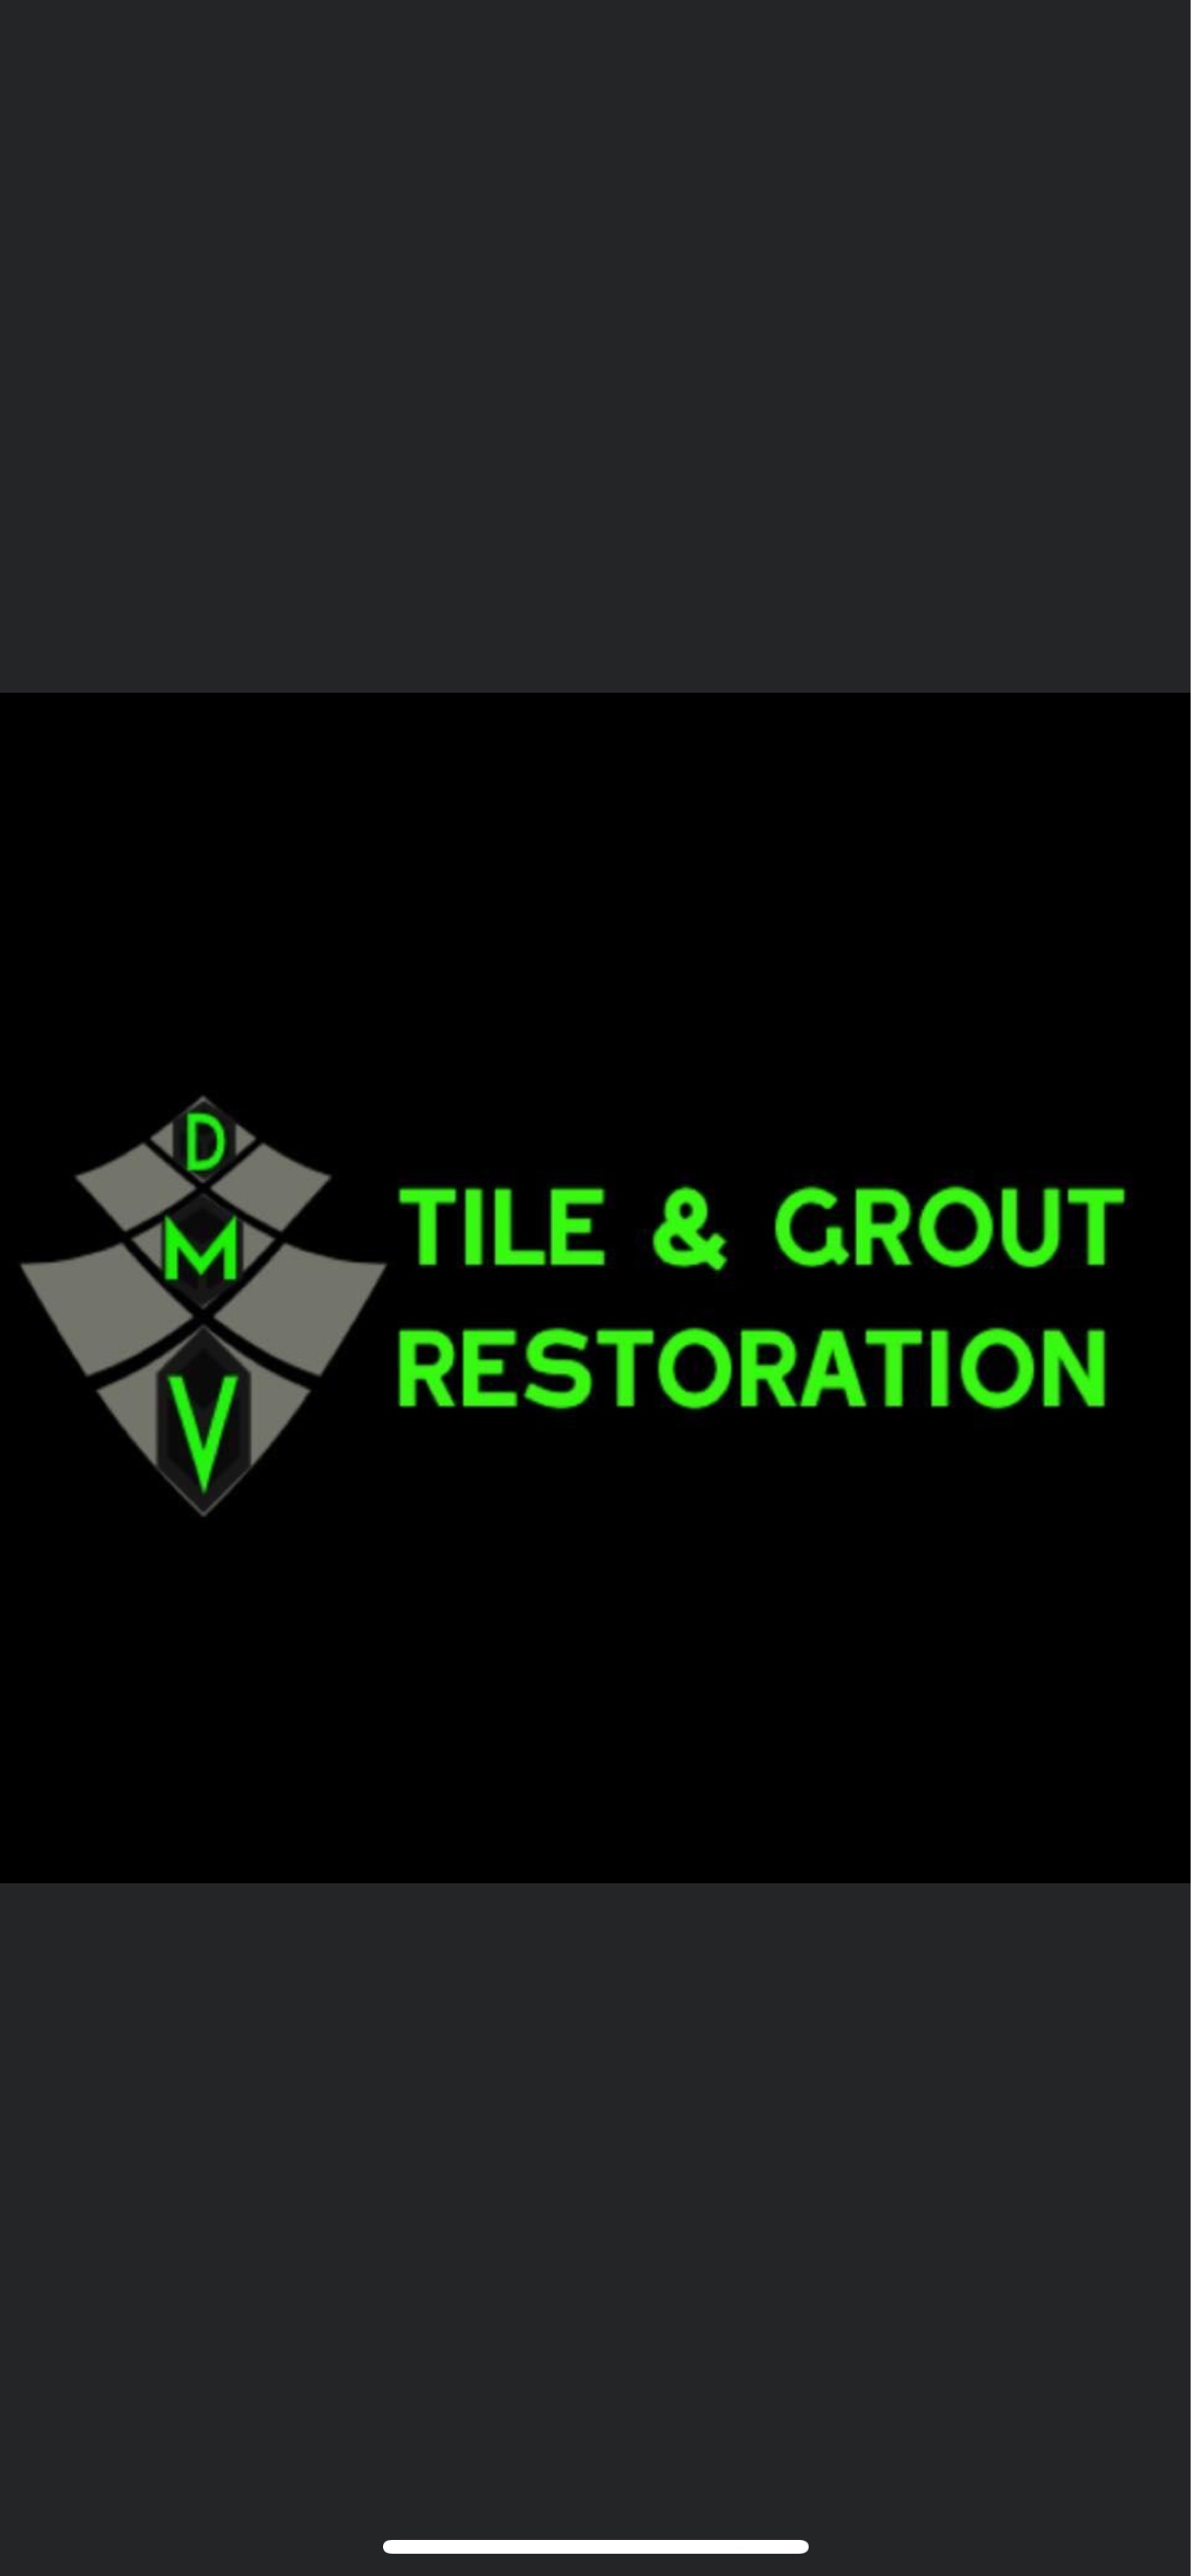 DMV Tile & Grout Logo